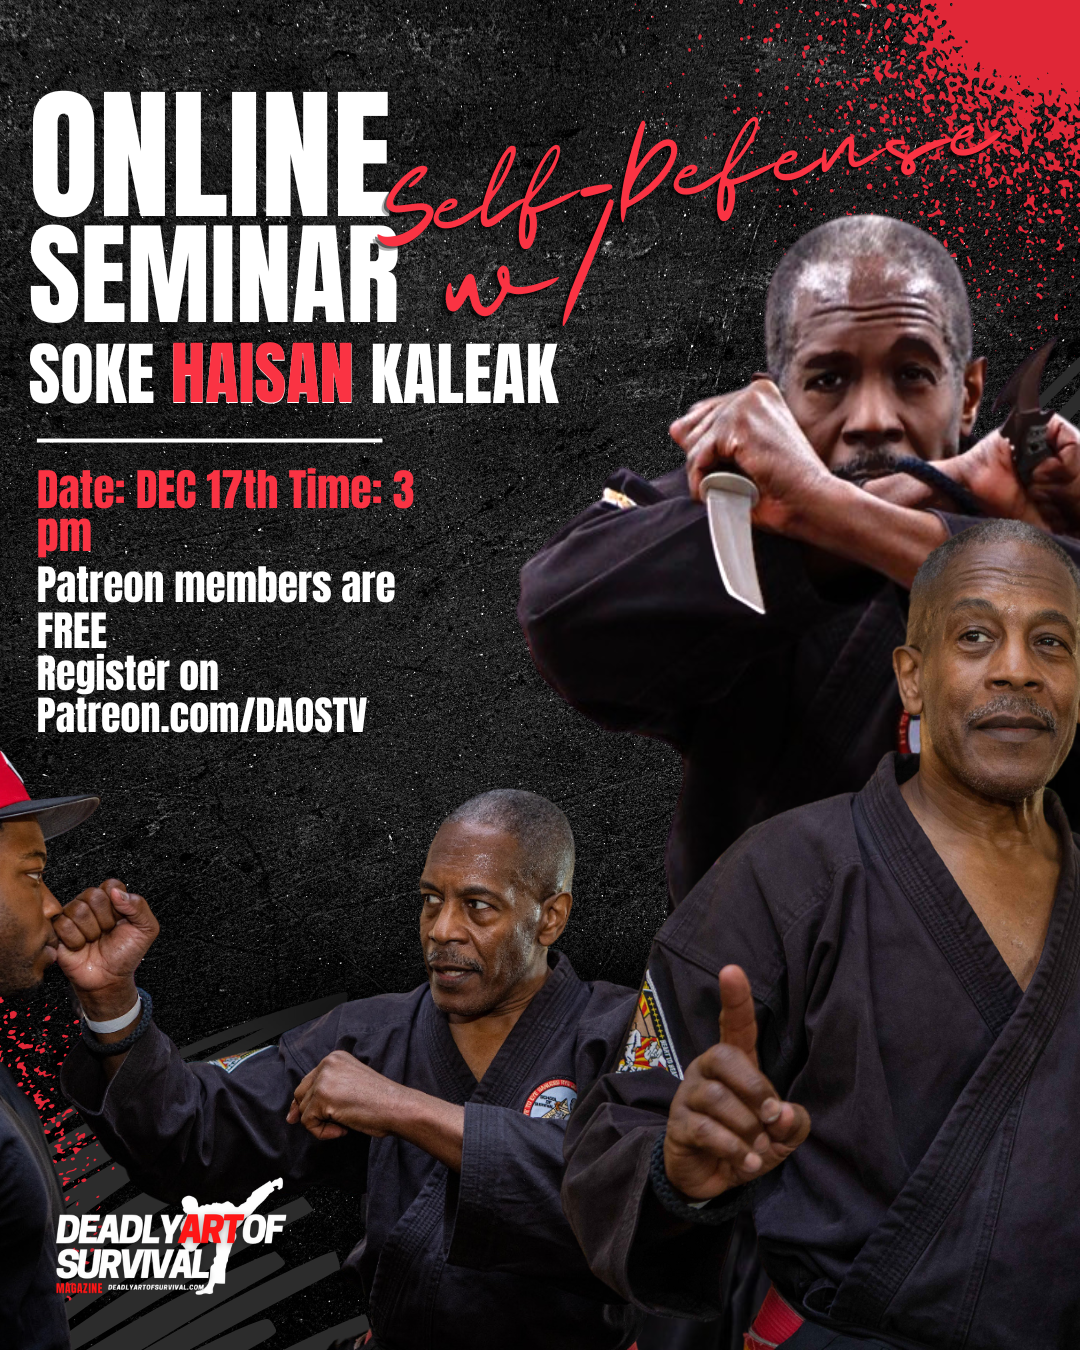 Soke Haisan Kaleak Online Seminar Video deadlyartofsurvival.com